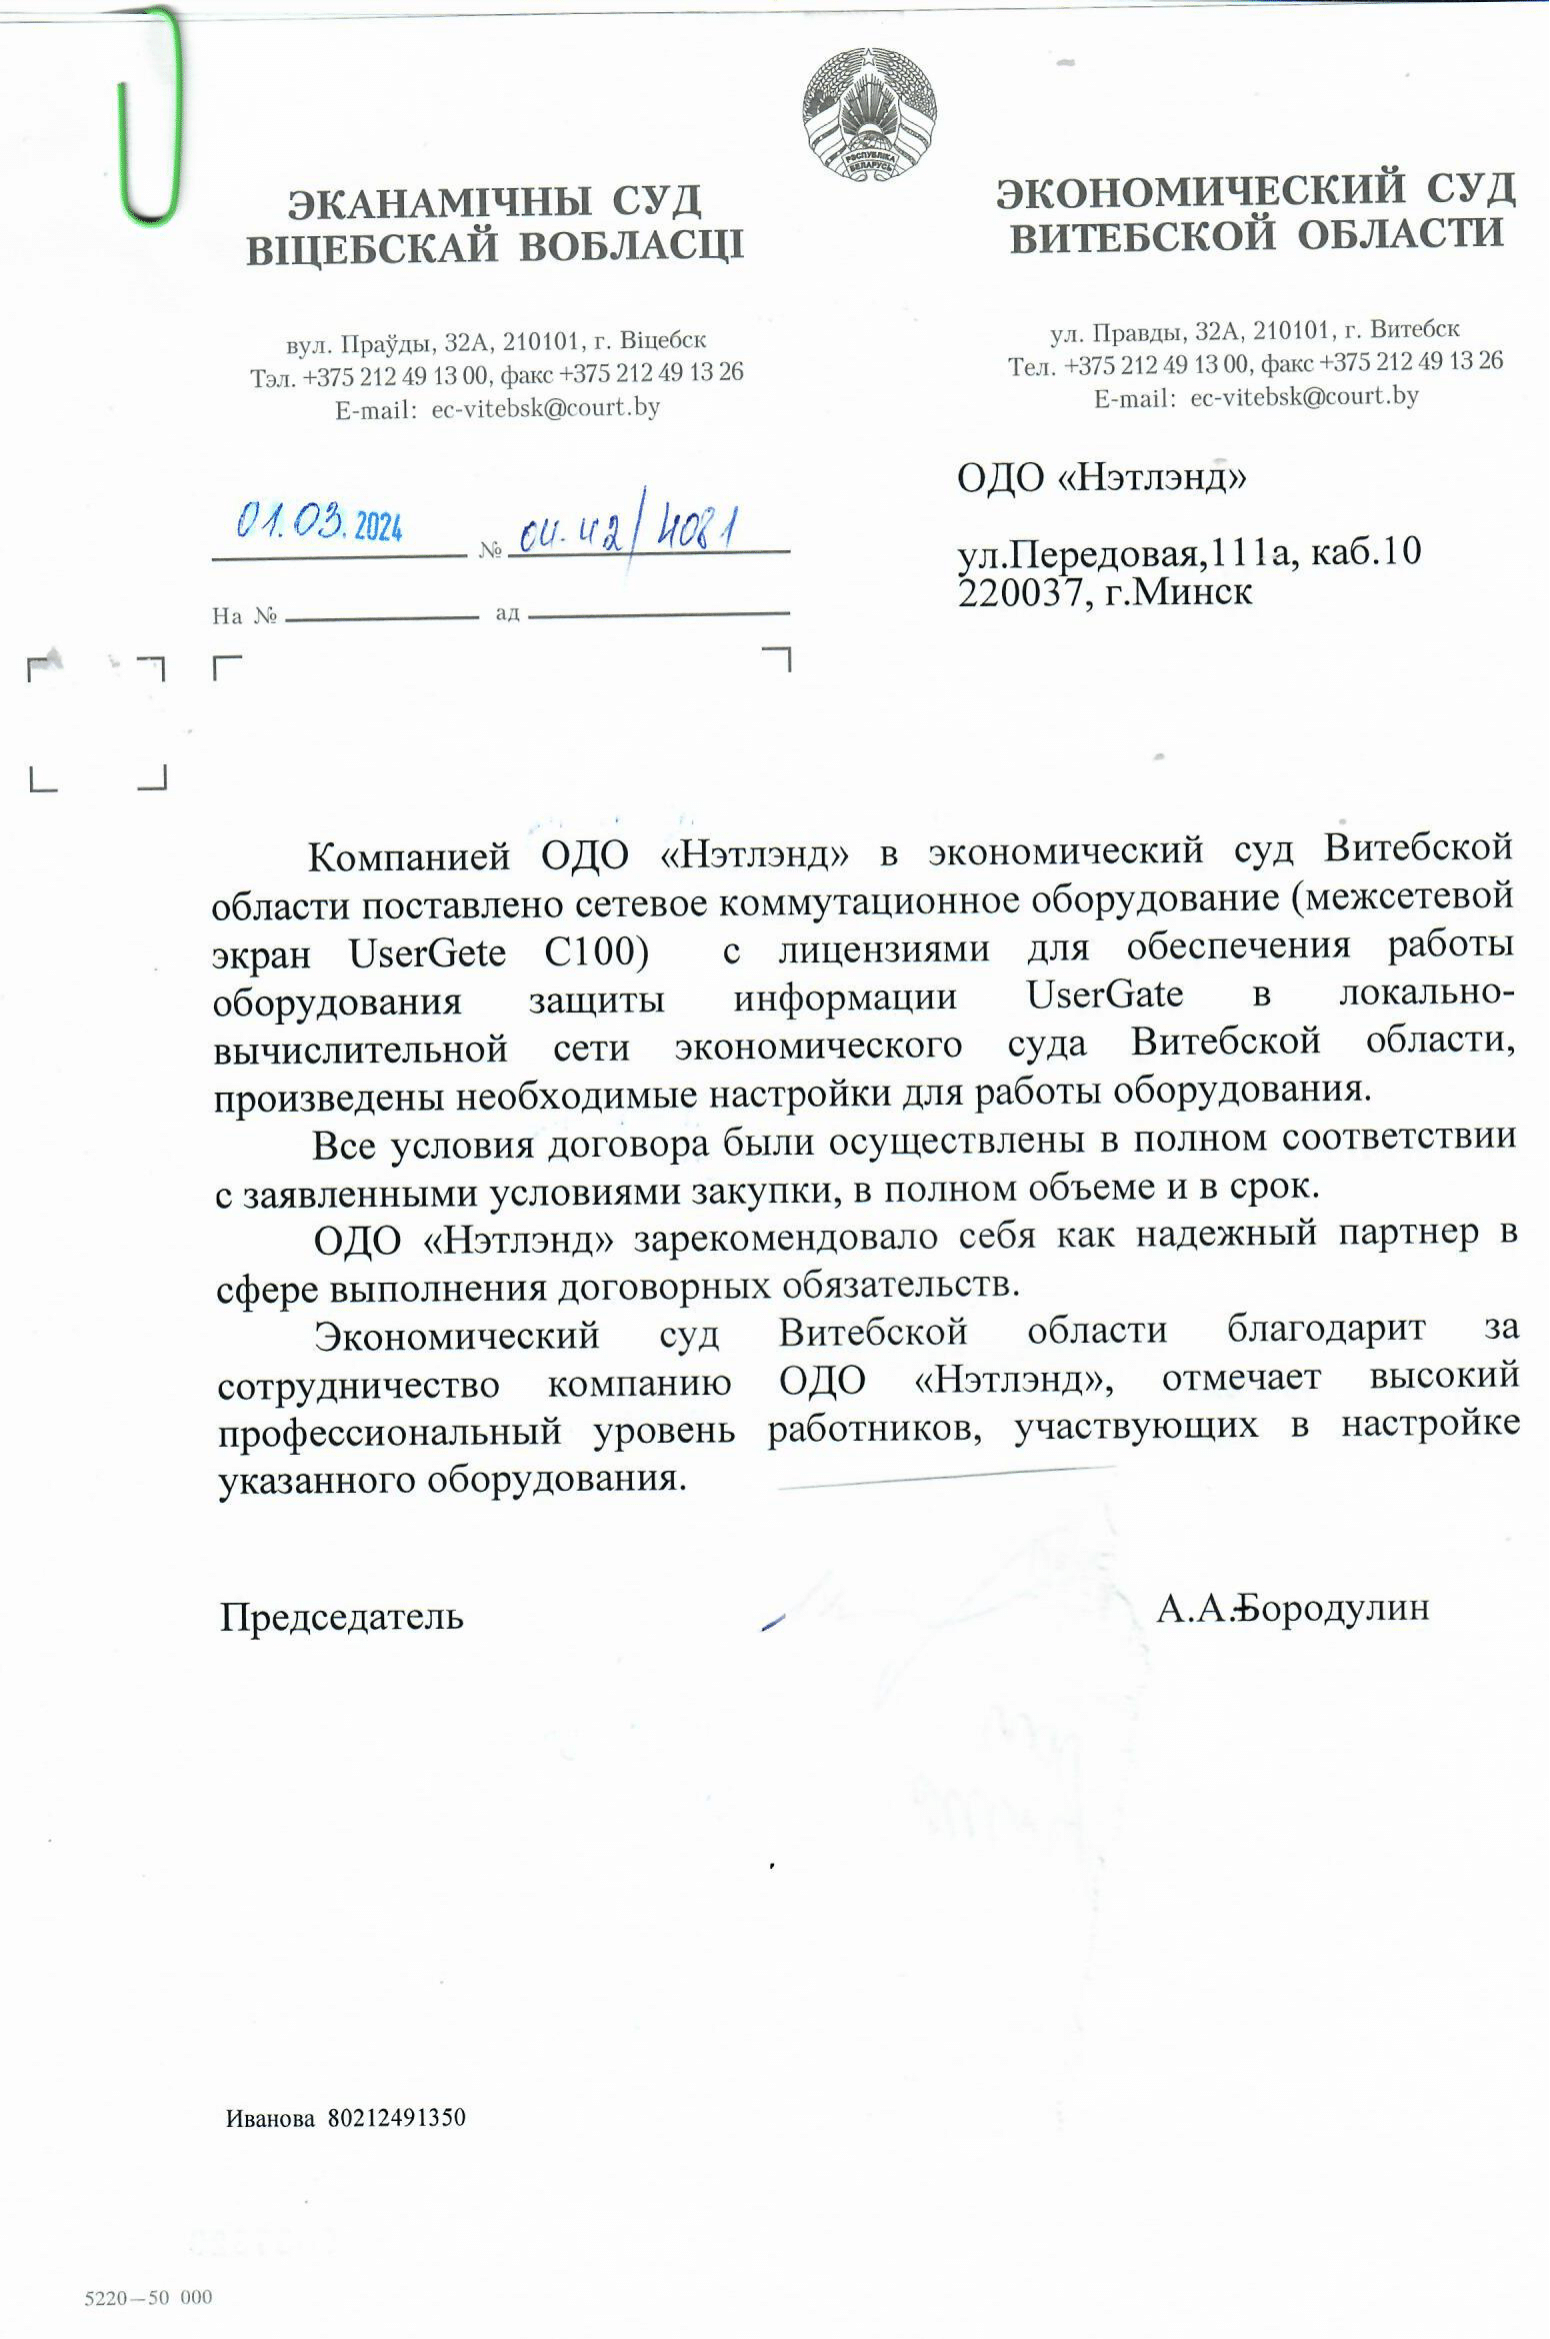 Скан от Экономический суд Витебской области